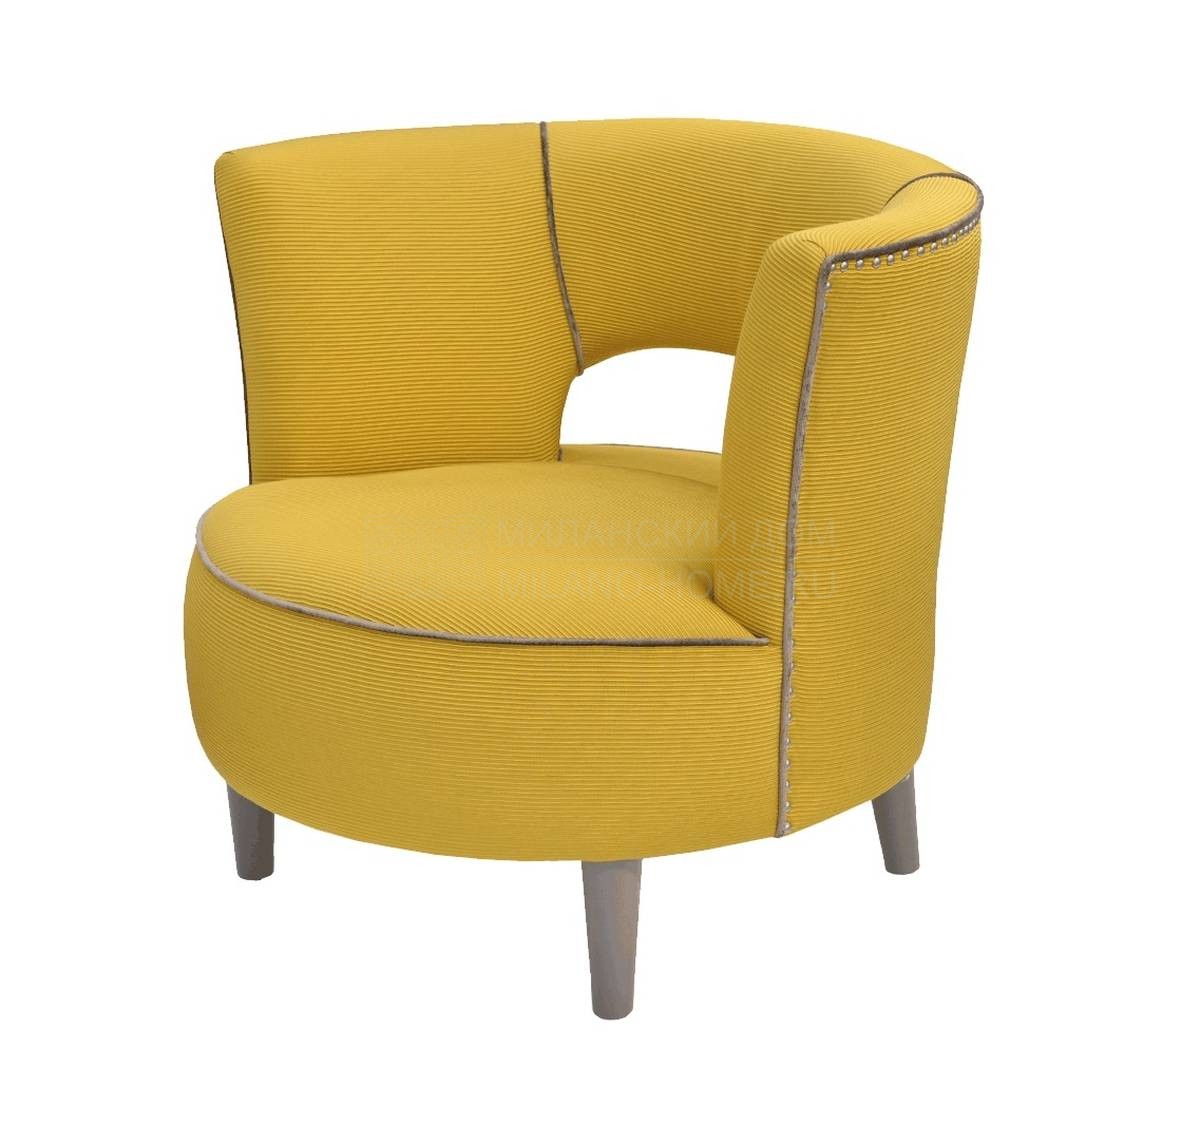 Круглое кресло Lille armchair из Португалии фабрики FRATO